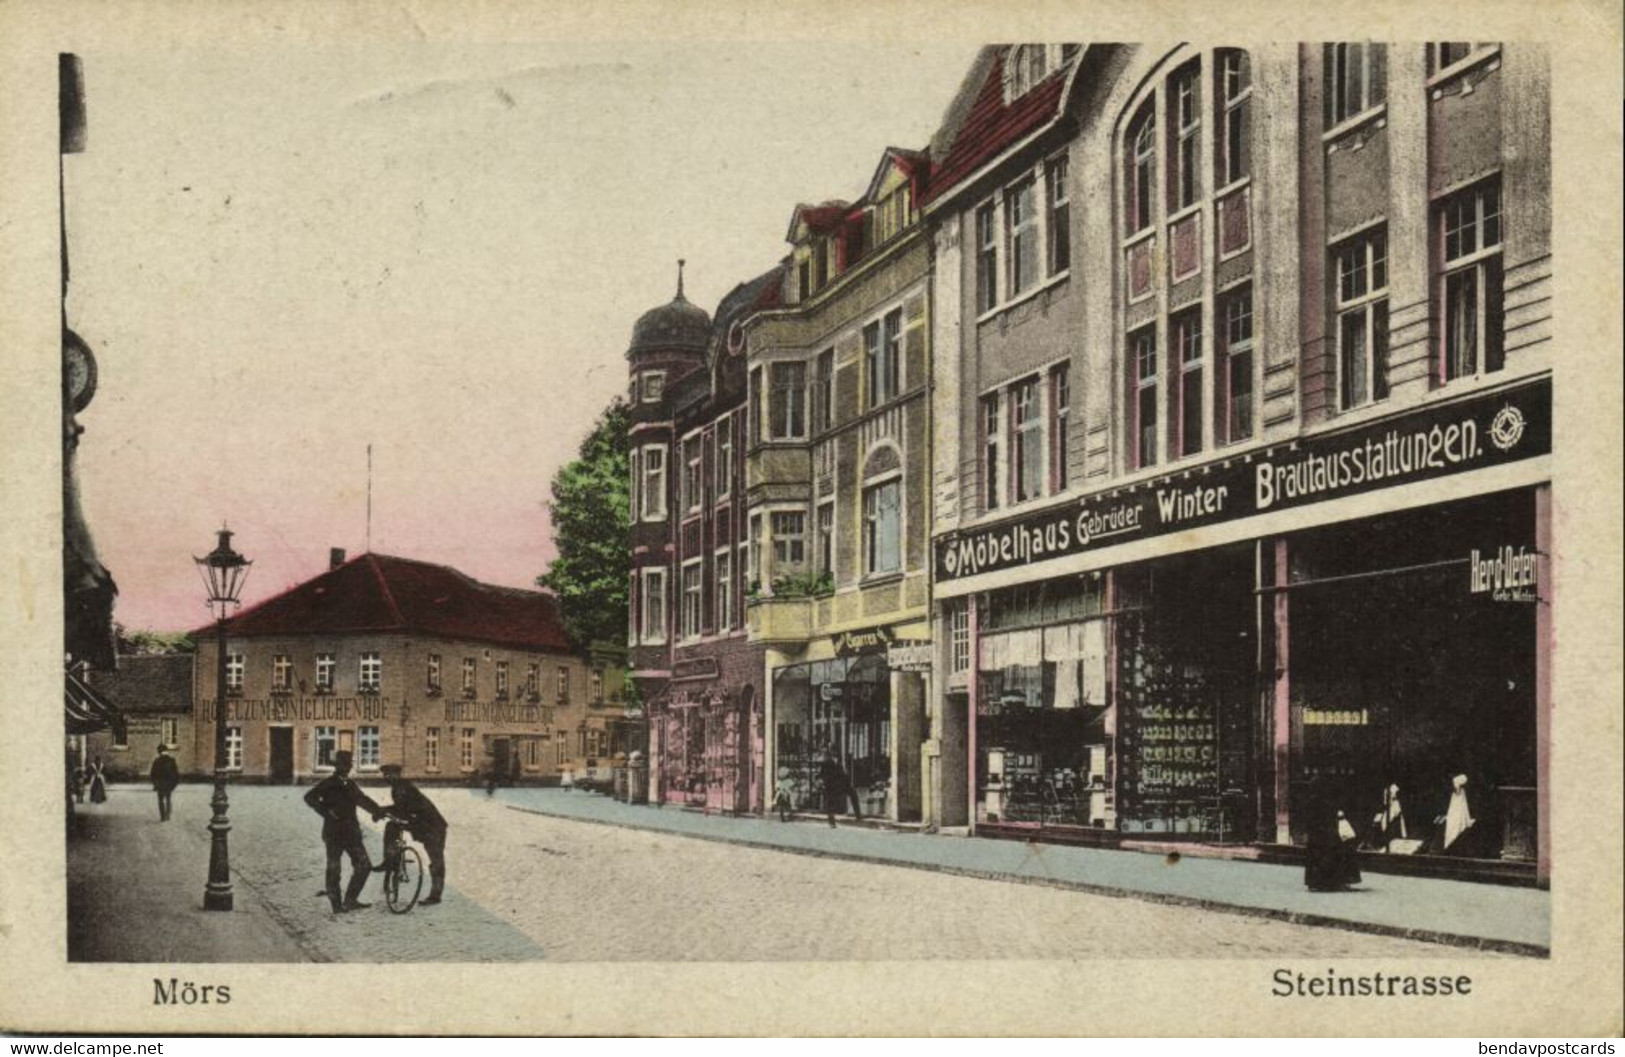 MÖRS MOERS, Steinstrasse, Möbelhaus Gebr. Winter (1919) AK - Moers